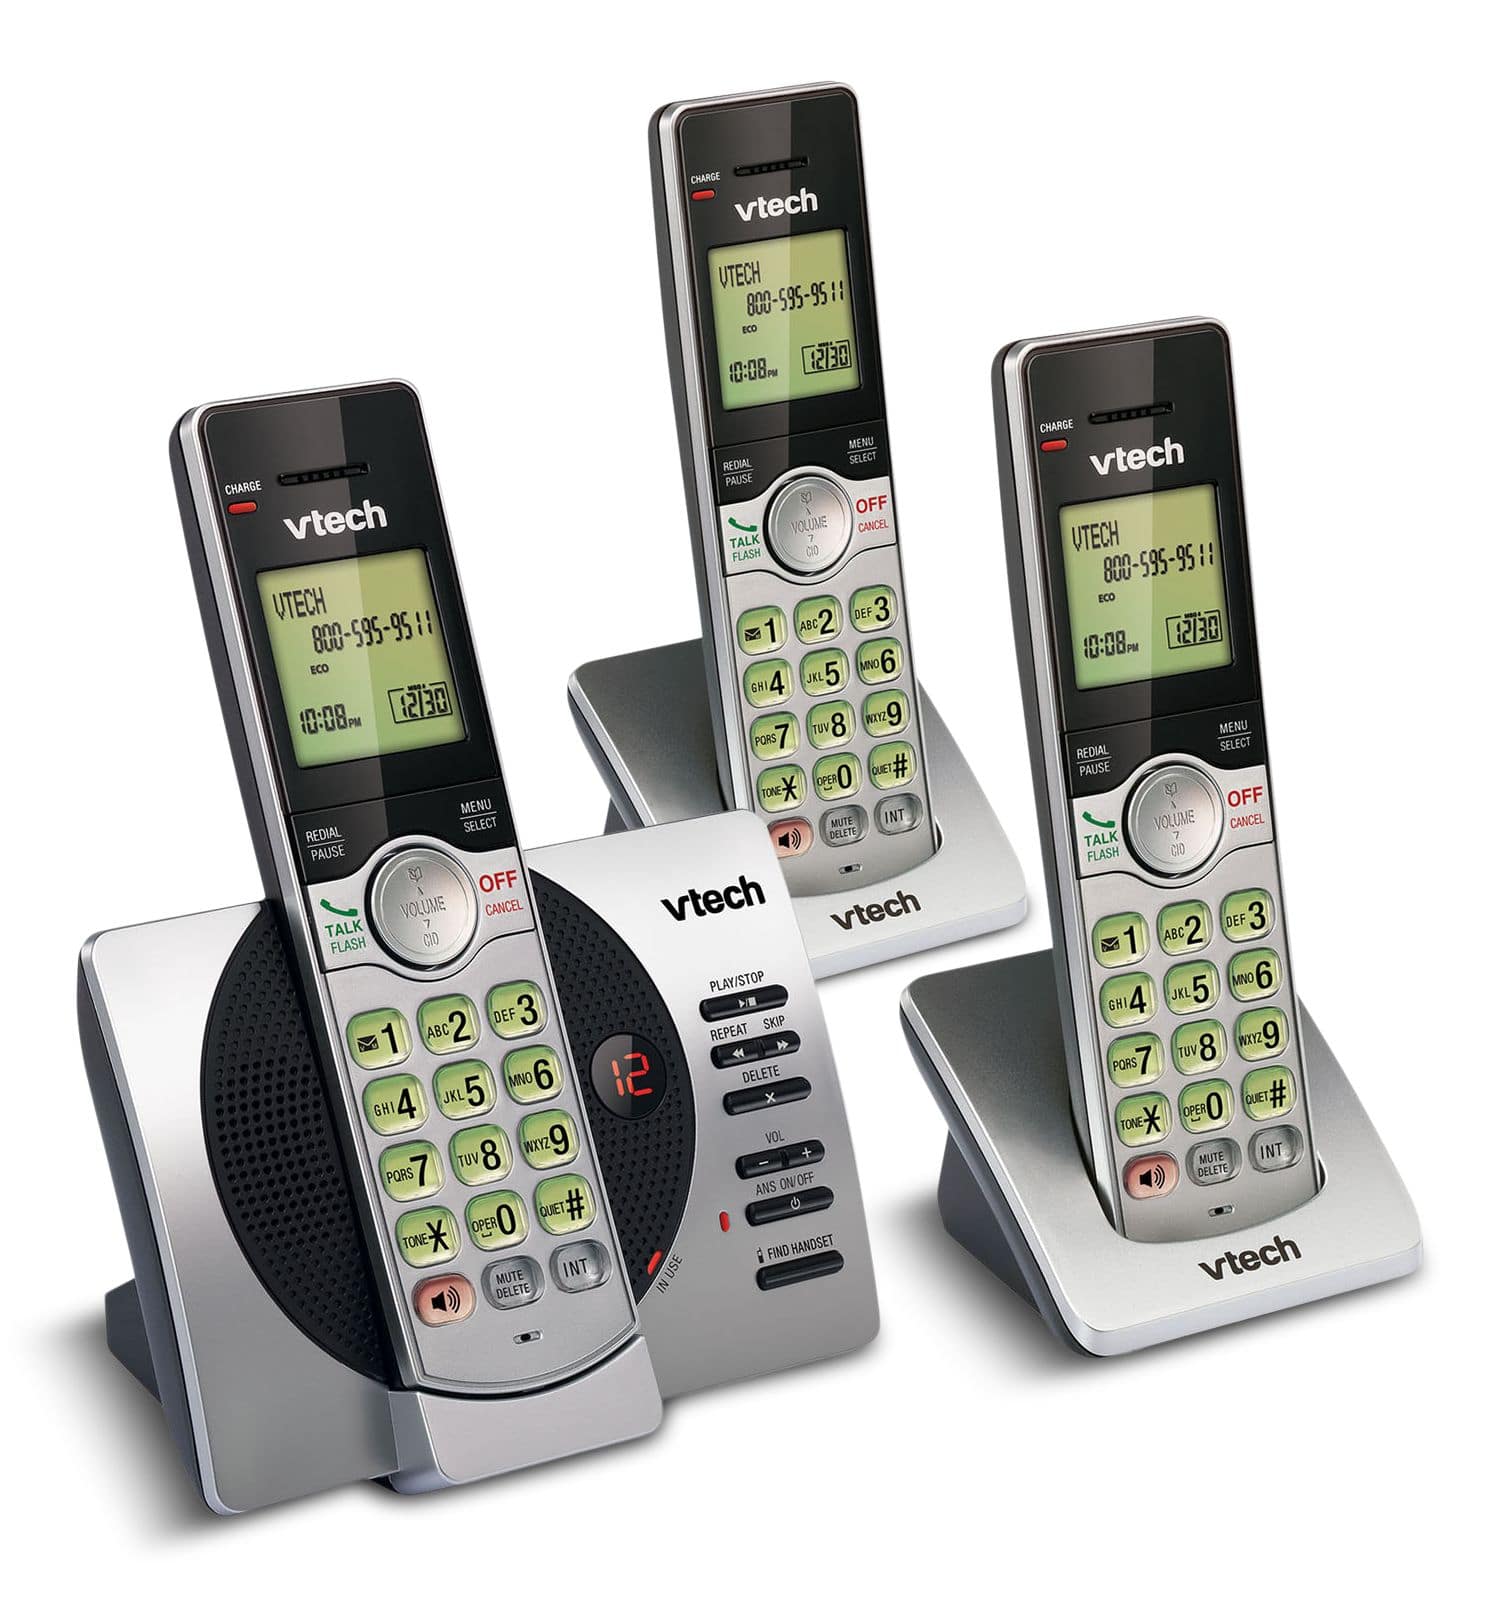 Téléphone sans fil à 3 combinés et répondeur numérique DECT 6.0 BE6425-3 de  Bell